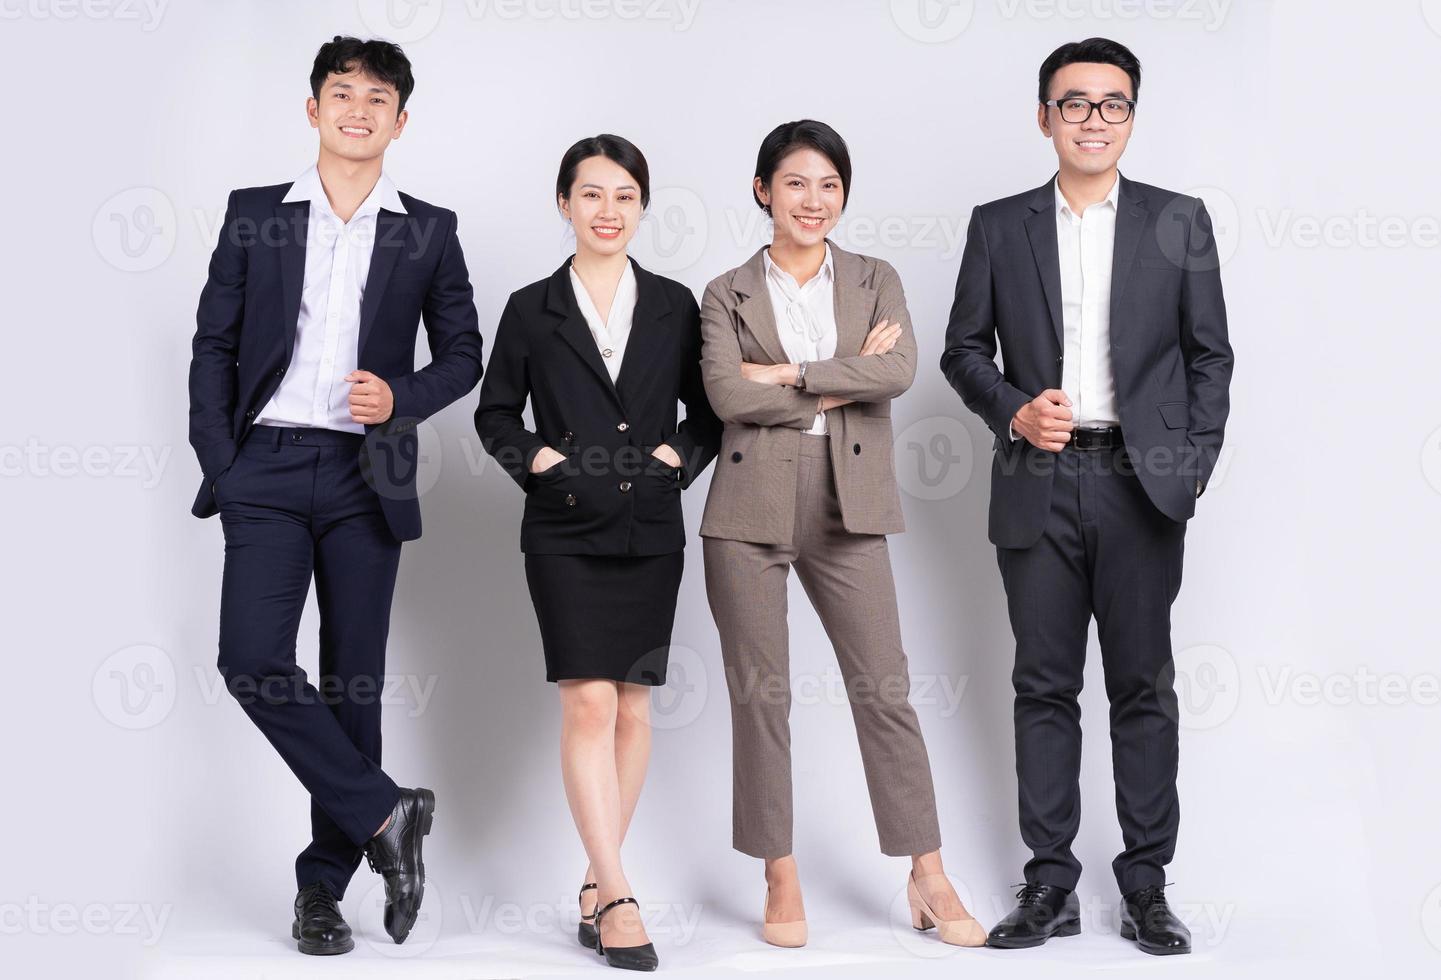 groupe d'hommes d'affaires asiatiques posant sur fond blanc photo